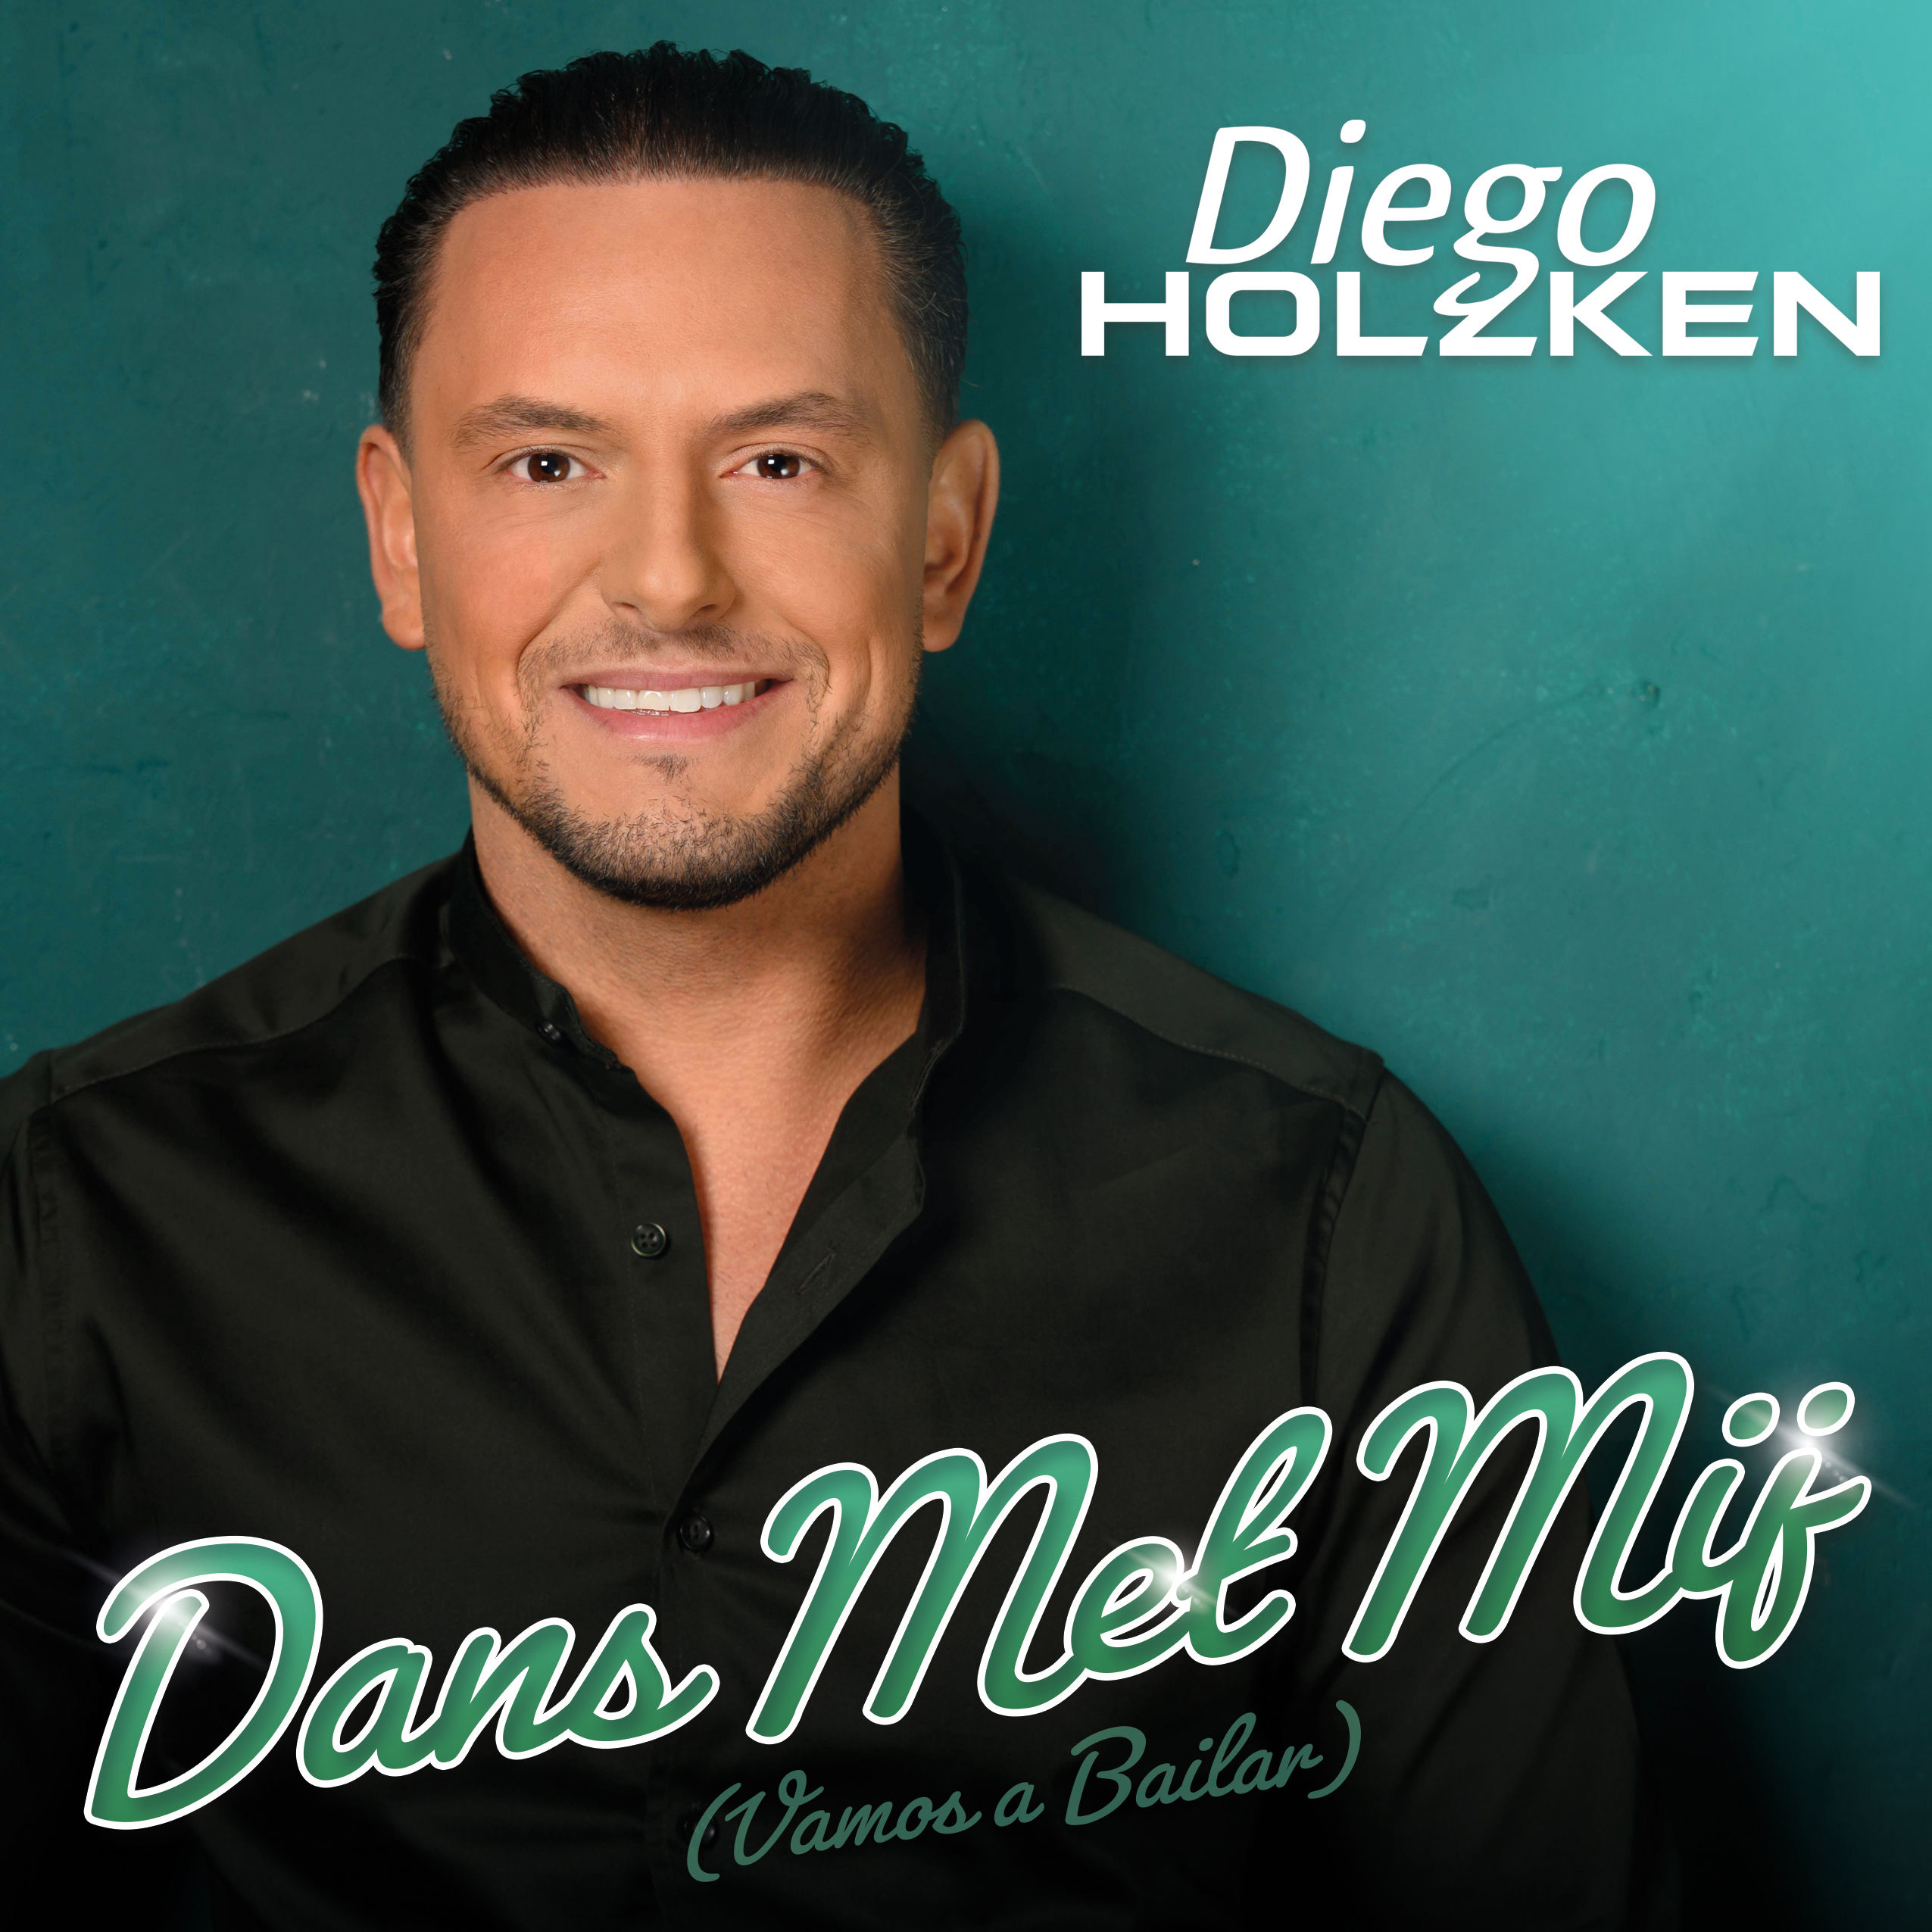 Diego Holzken - Dans Met Mij (Vamos A Bailar)